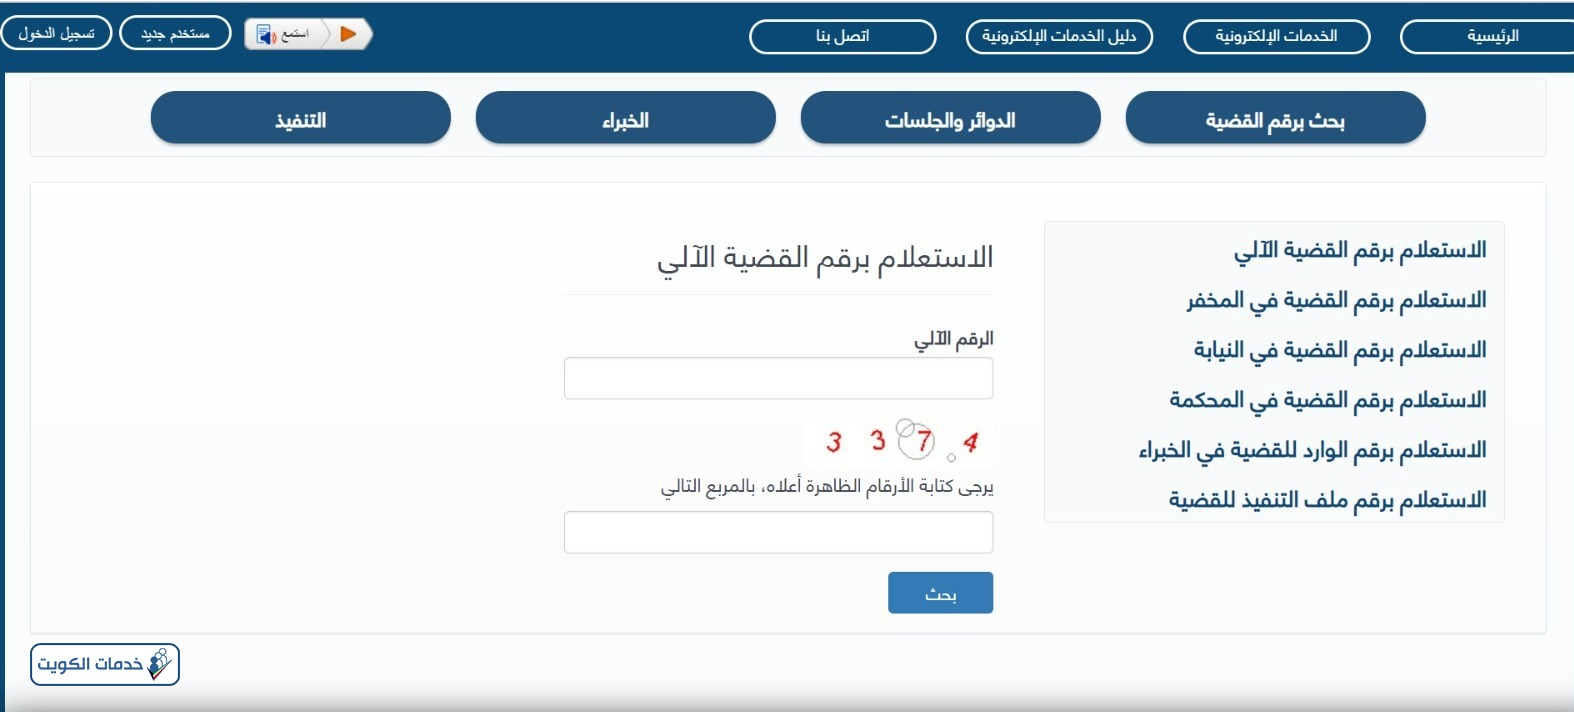 بوابة العدل الالكترونية بدولة الكويت الاستعلام عن القضايا